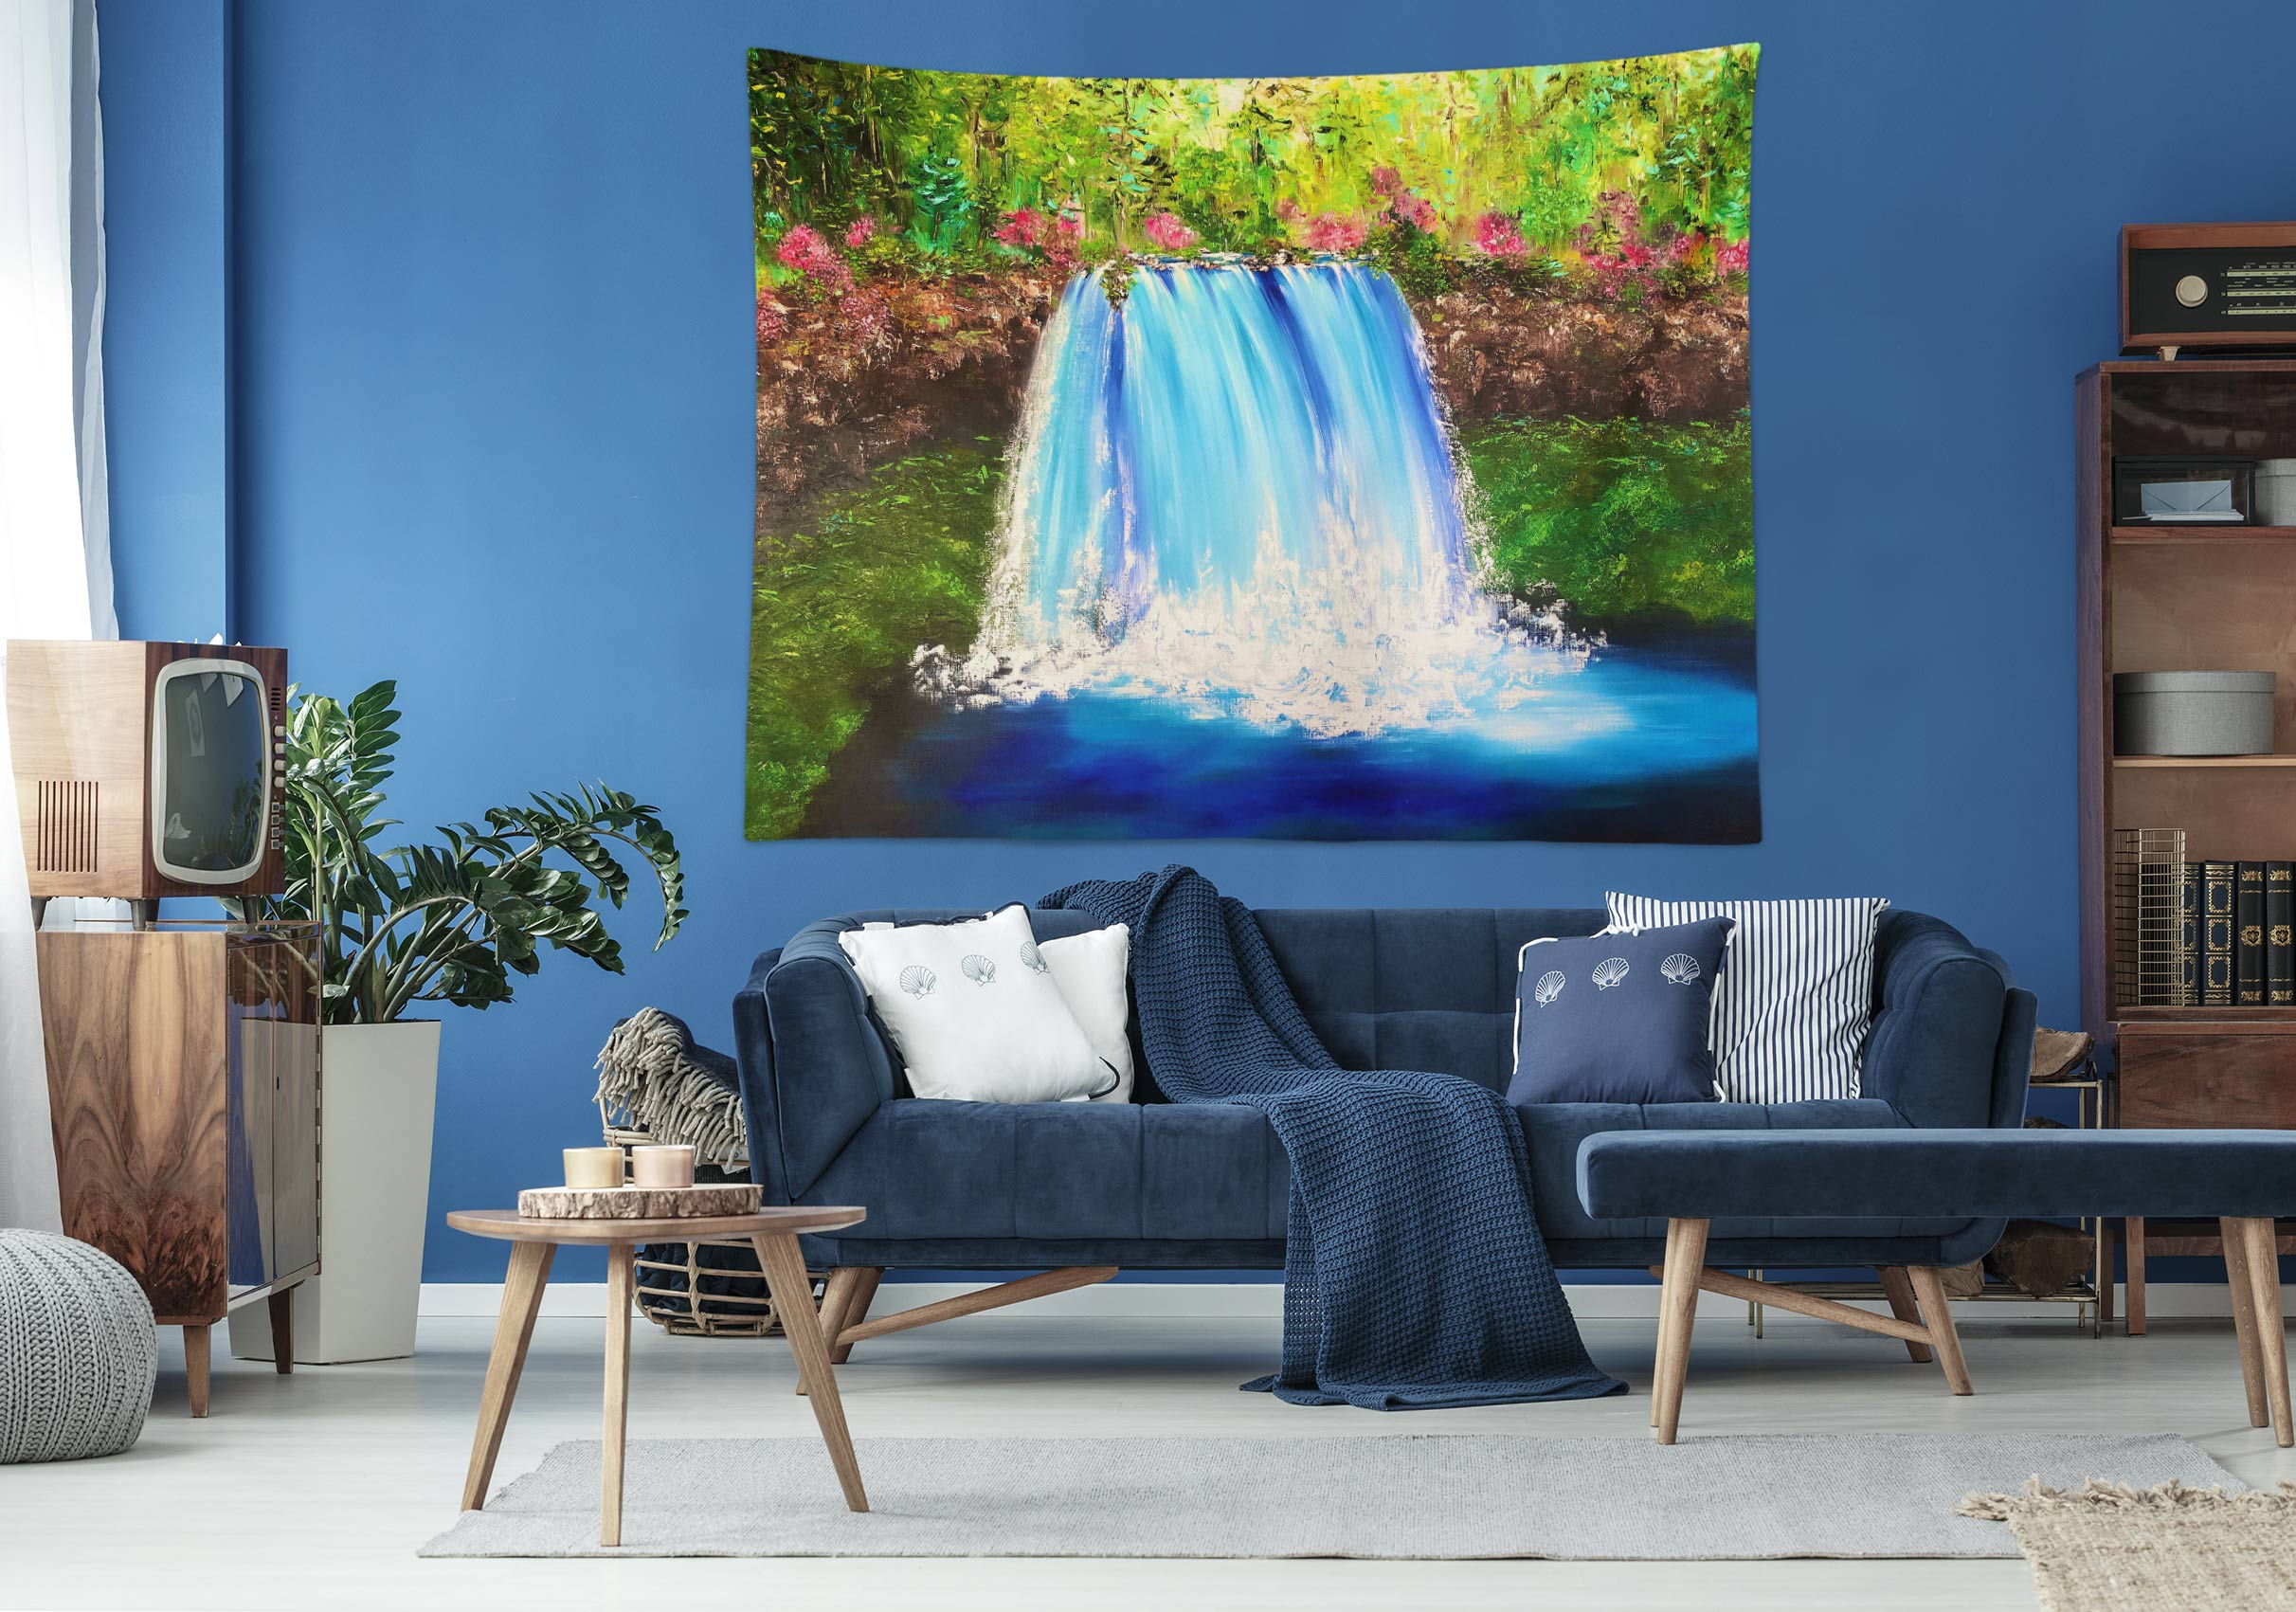 3D Blue Waterfall 3519 Skromova Marina Tapestry Hanging Cloth Hang